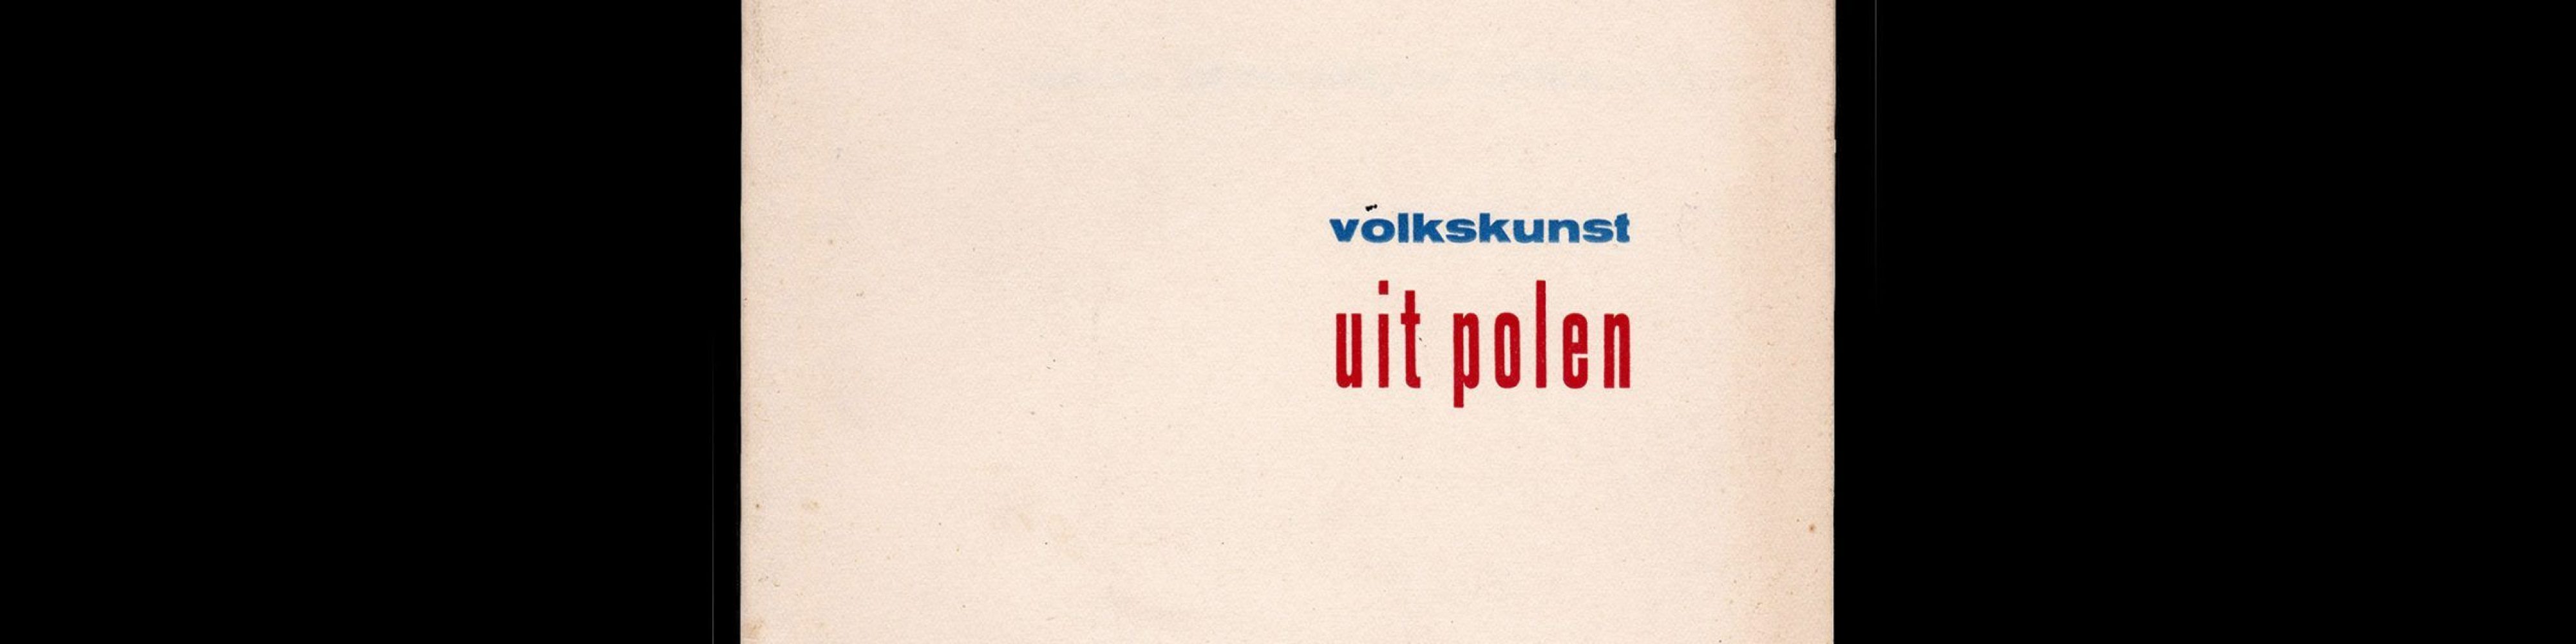 Poolse christelijke volkskunst, Stedelijk Museum Amsterdam, 1949 designed by Willem Sandberg